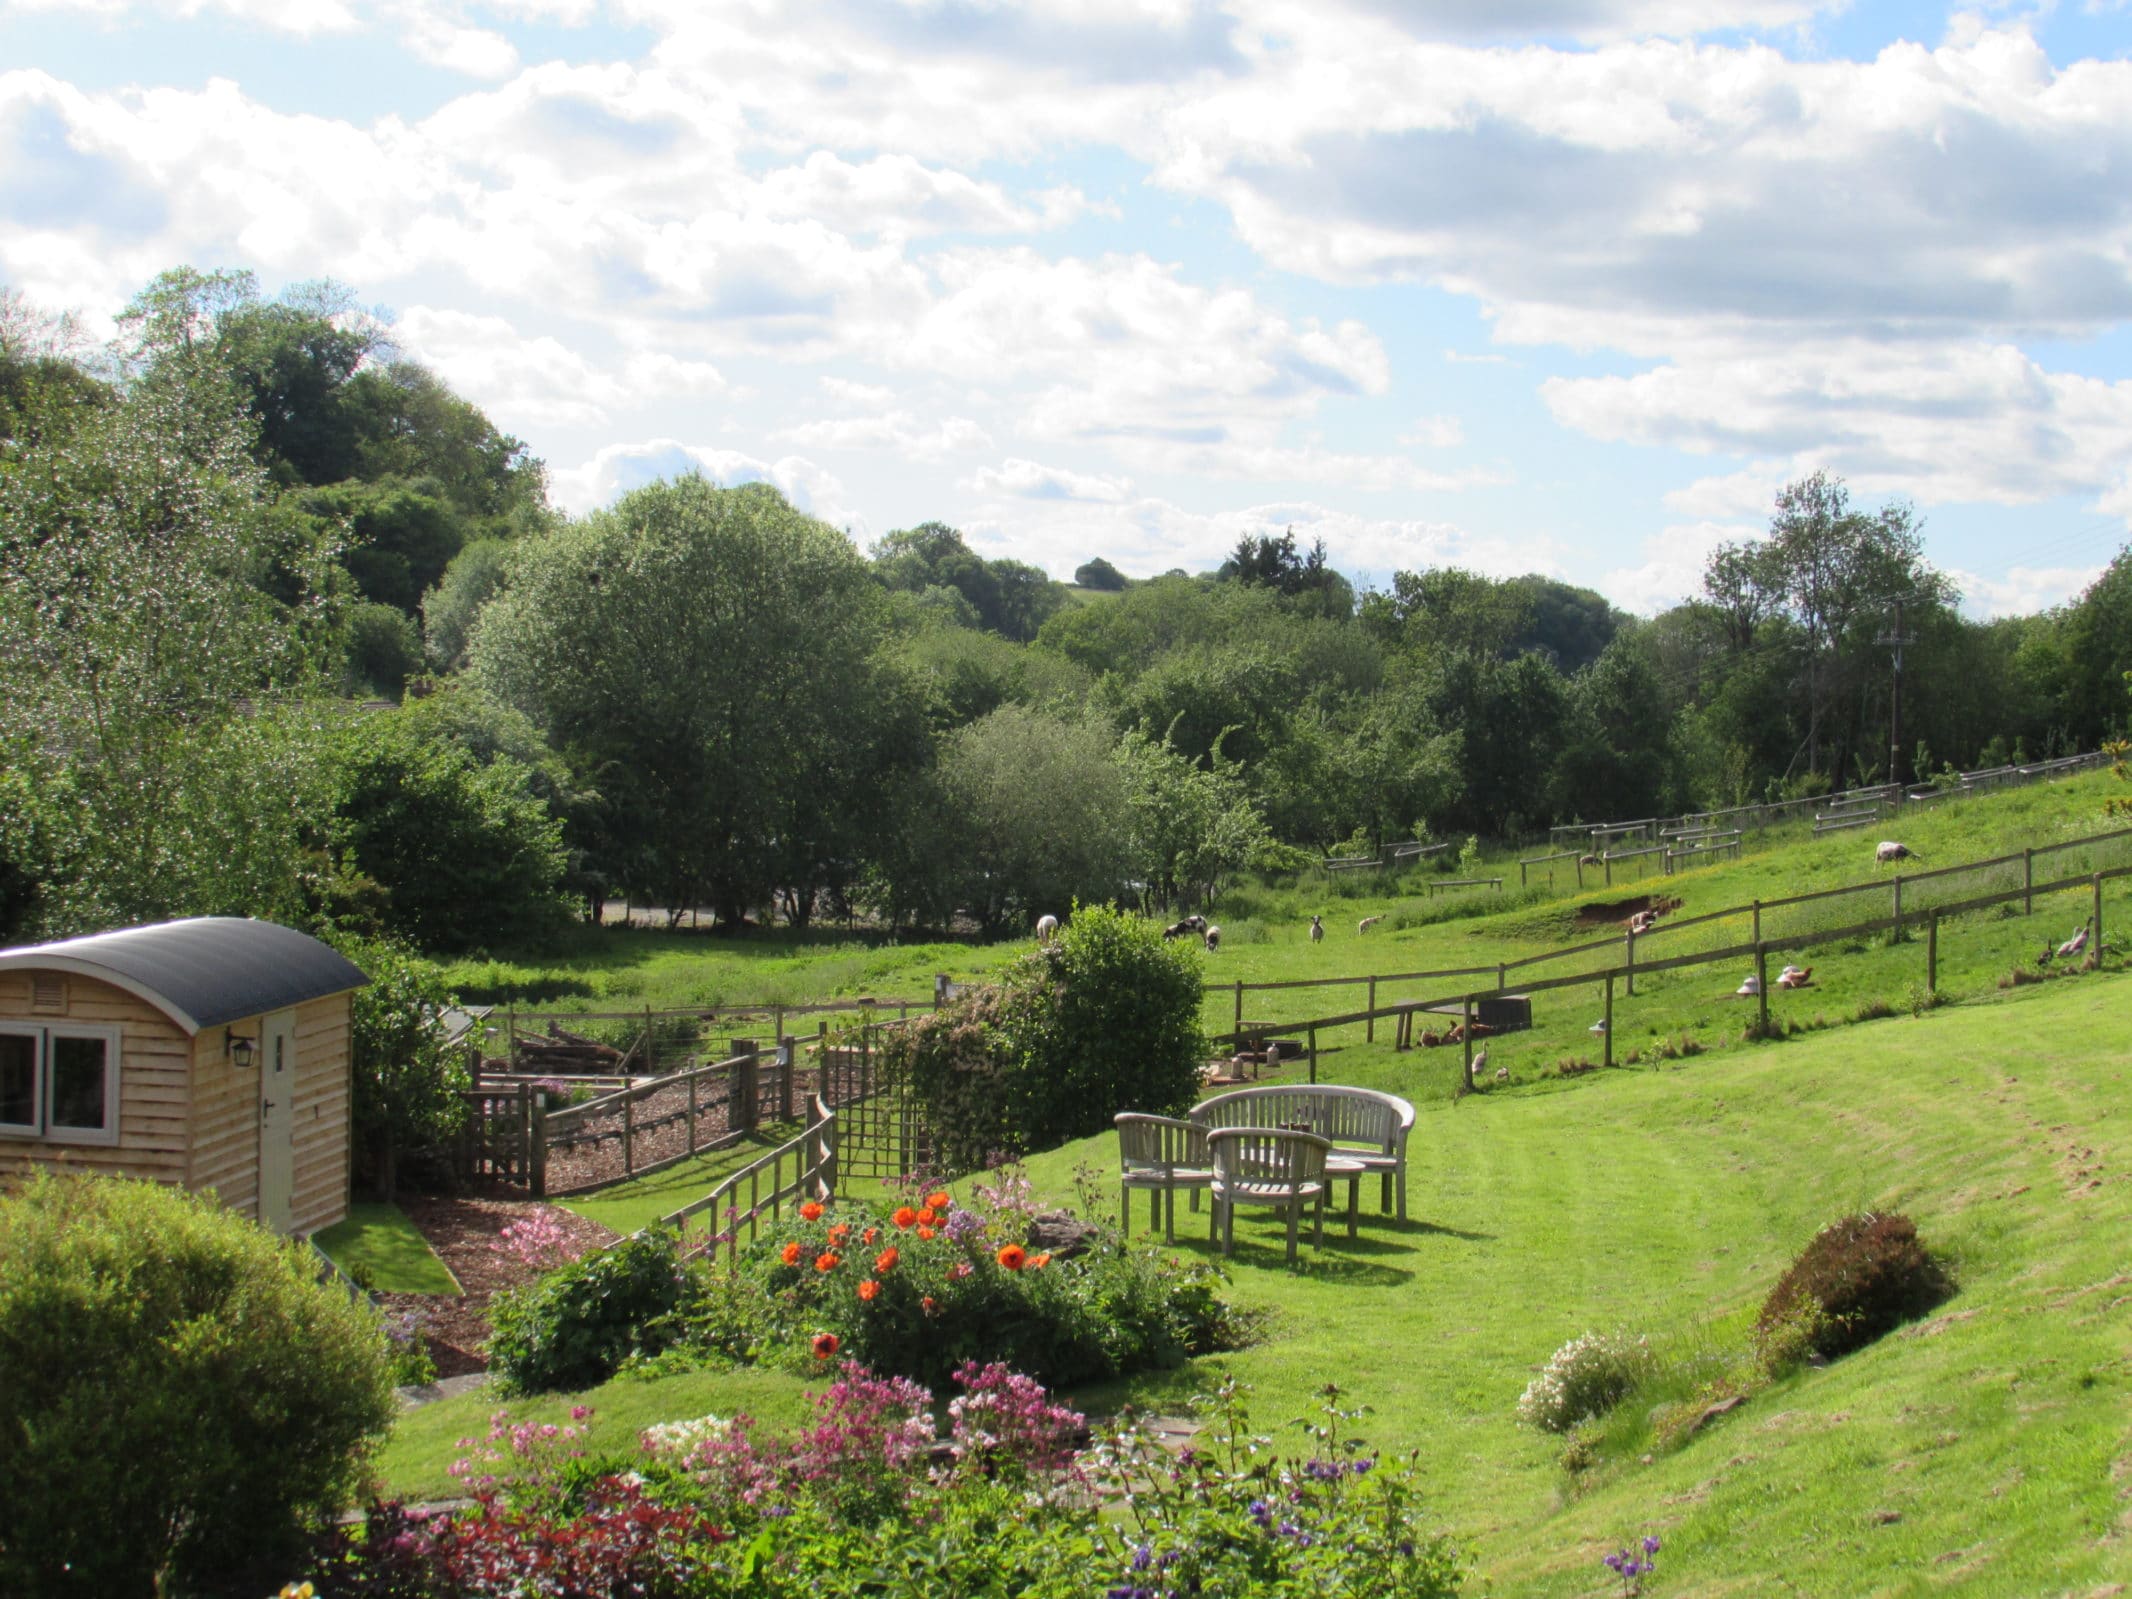 A true English country garden